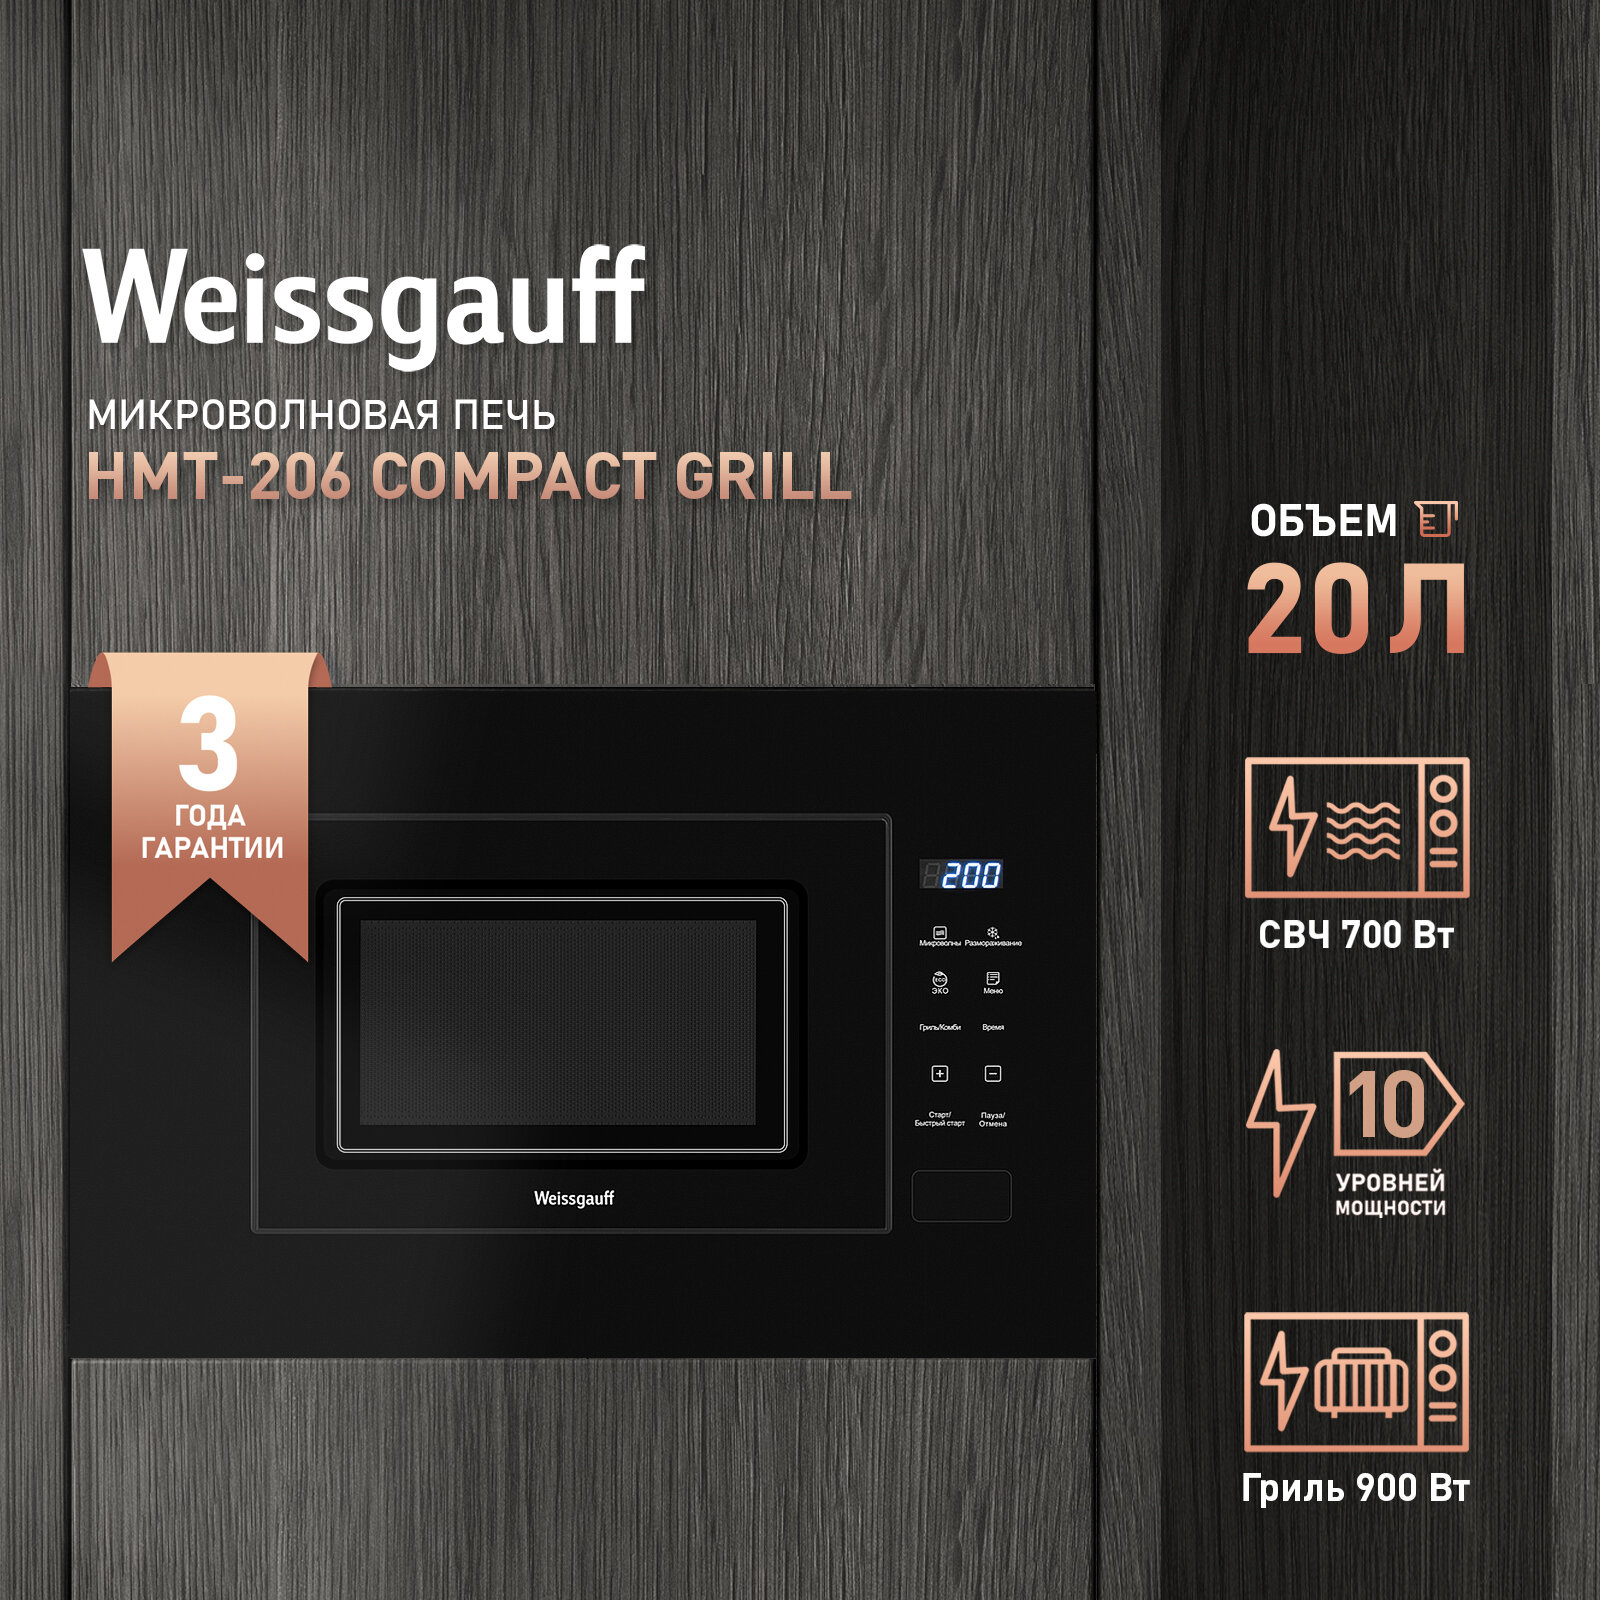 Встраиваемая микроволновая печь Weissgauff HMT-206 Compact Grill